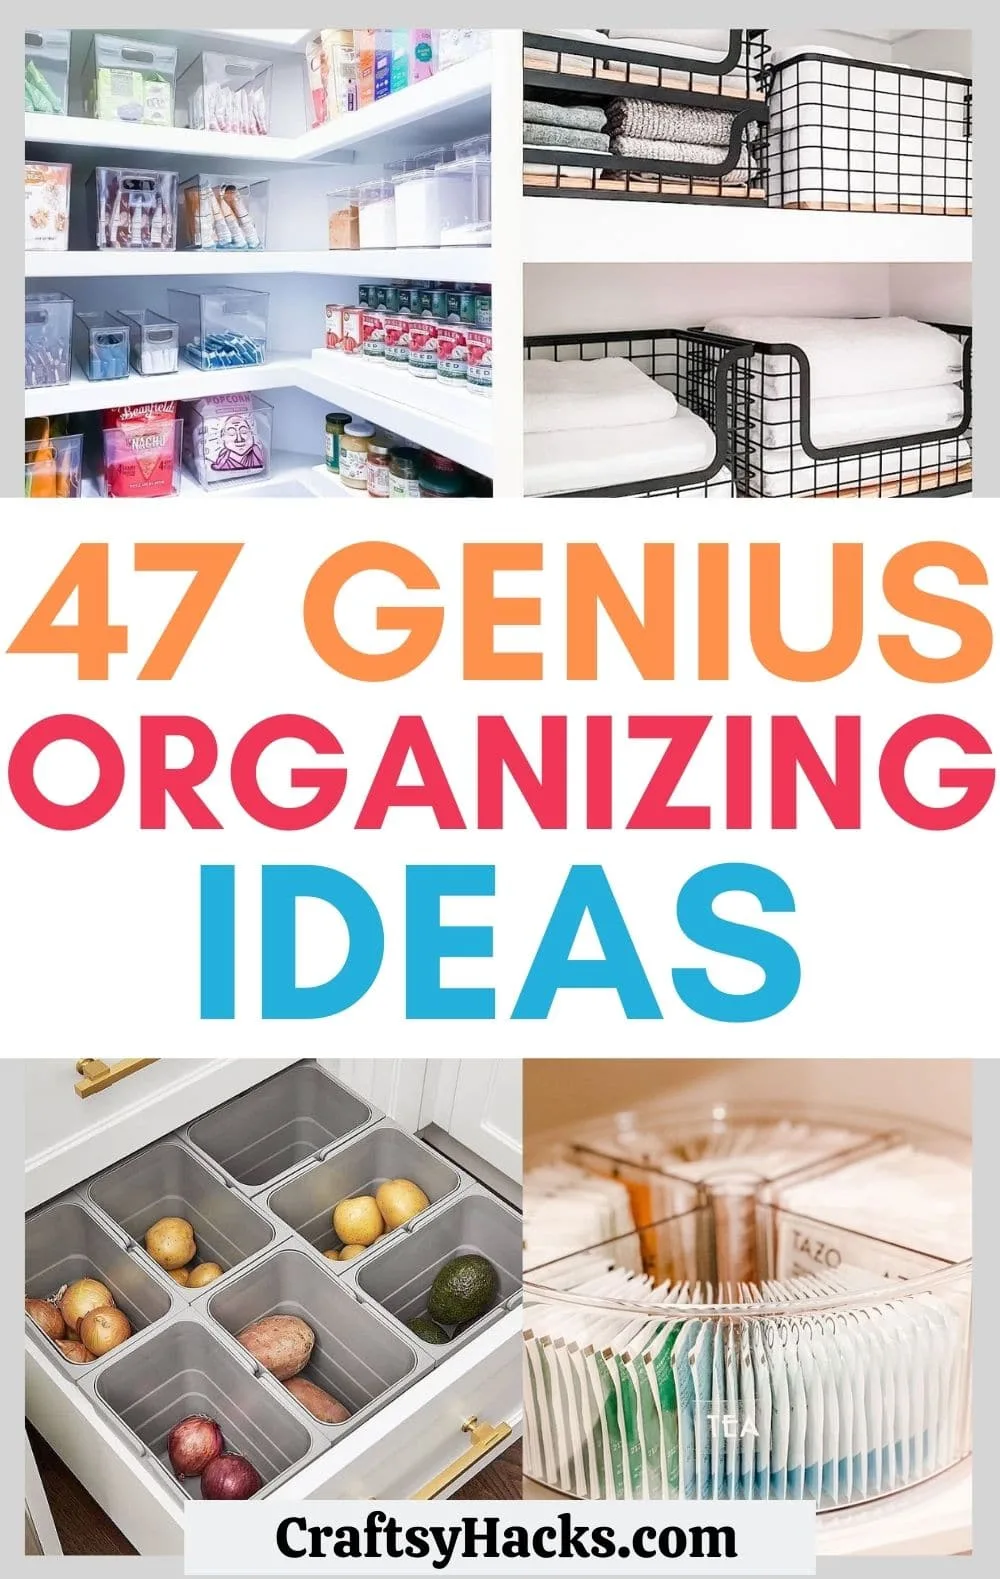 31 Genius Ways To Organize With Magazine Holders, Organize & Declutter